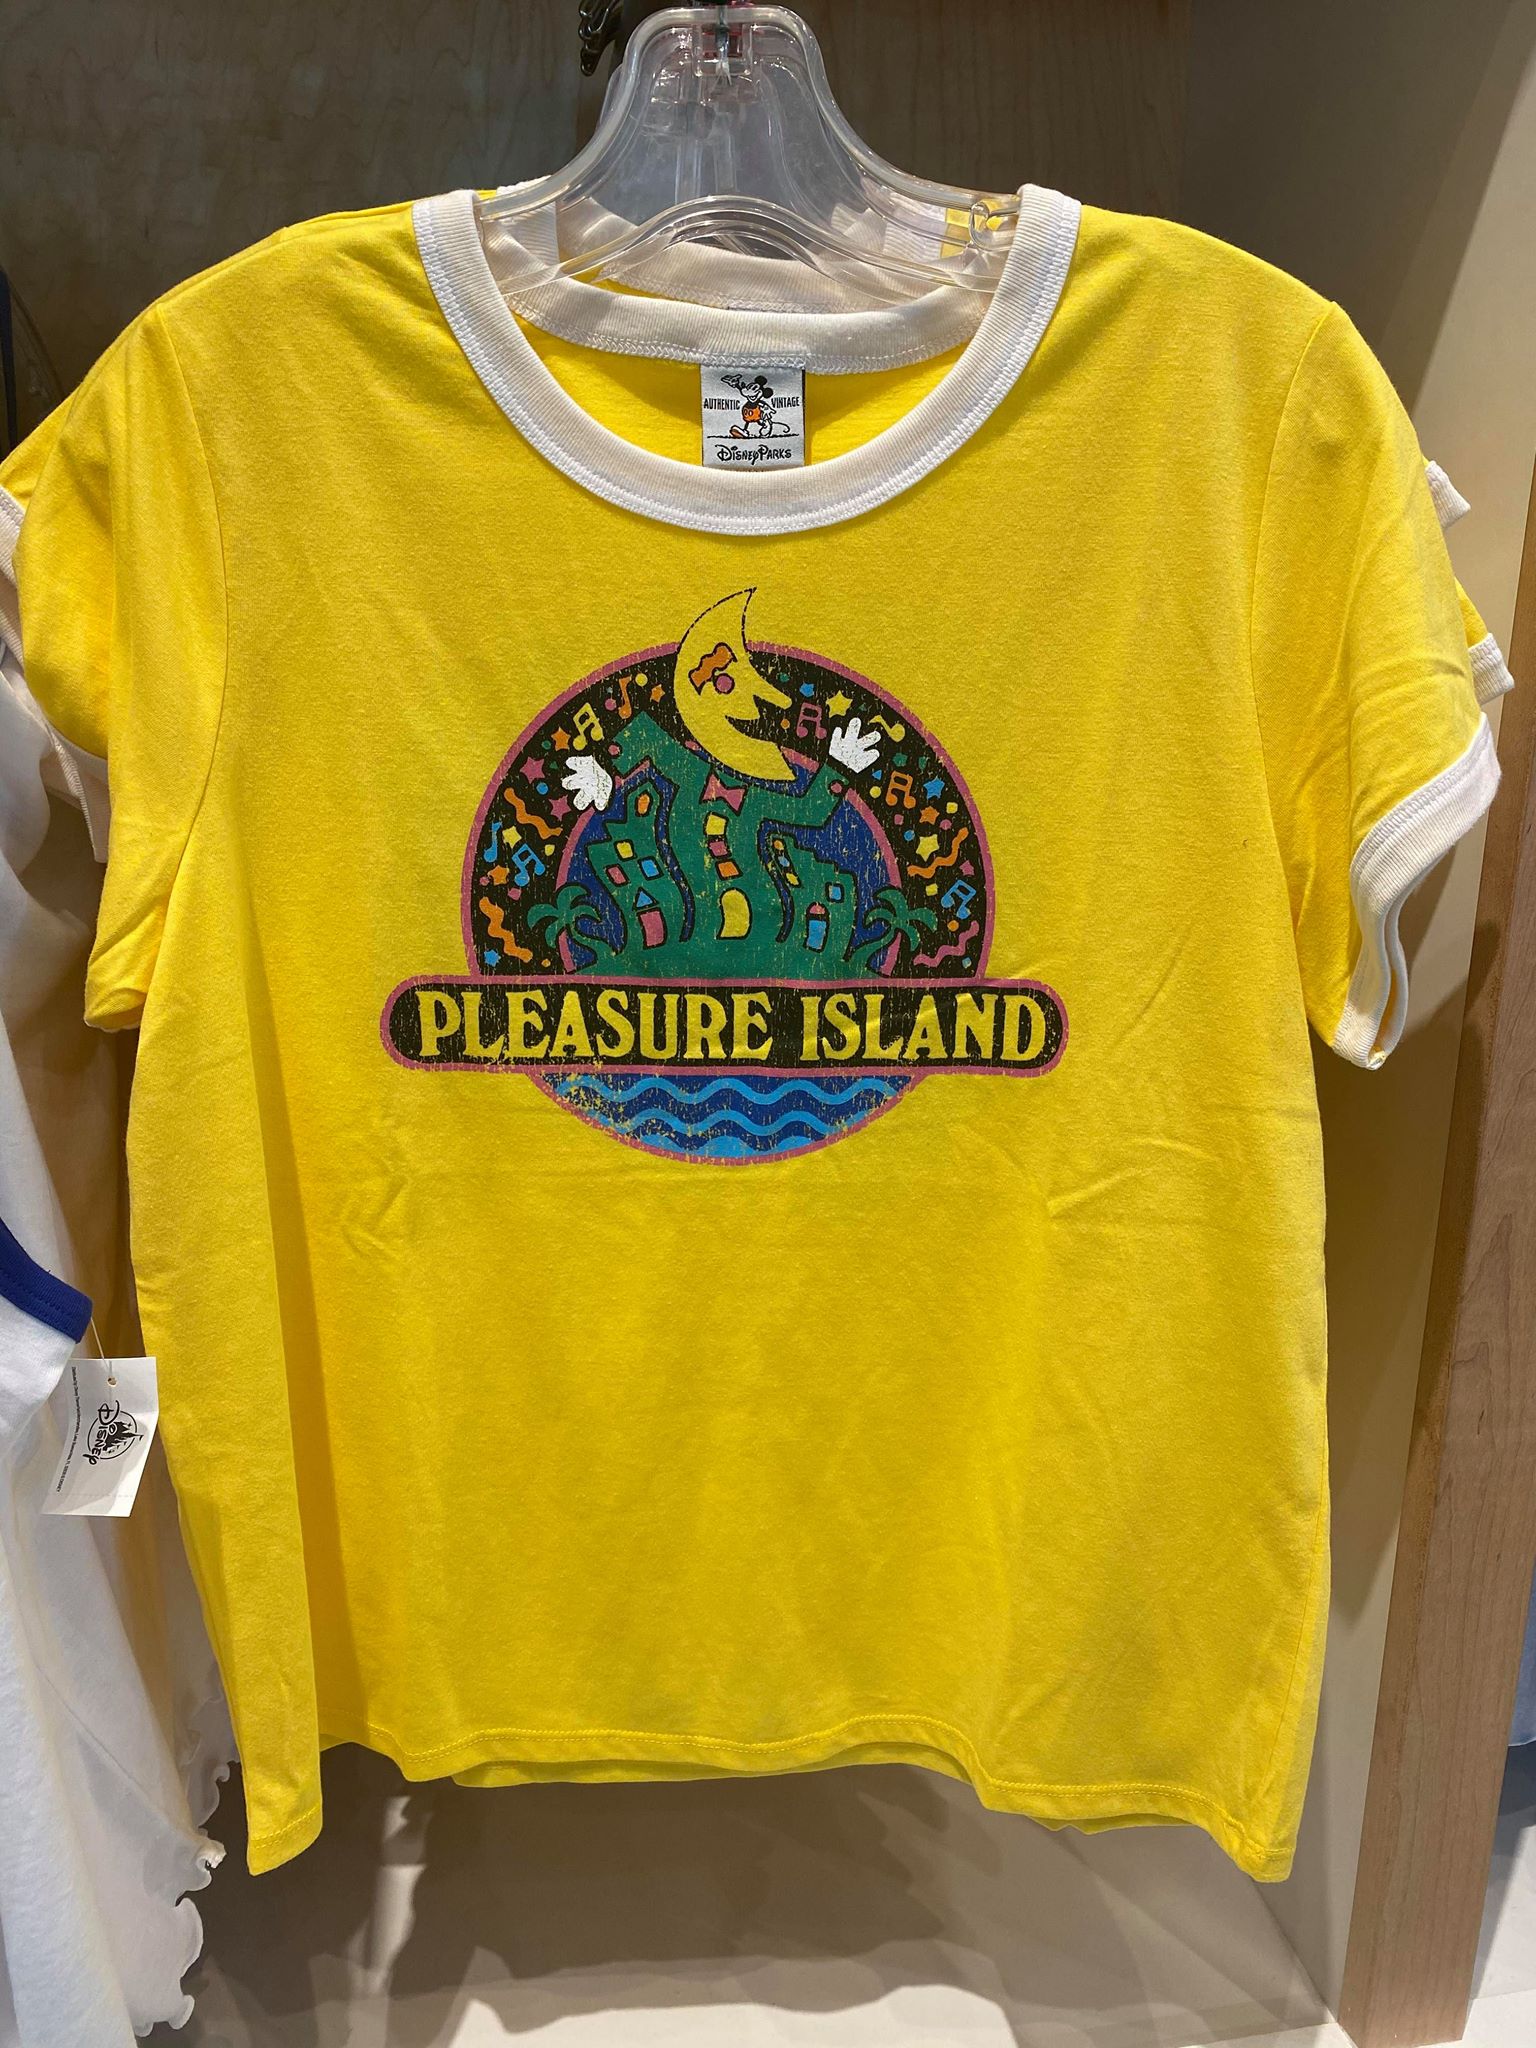 Pleasure Island tee